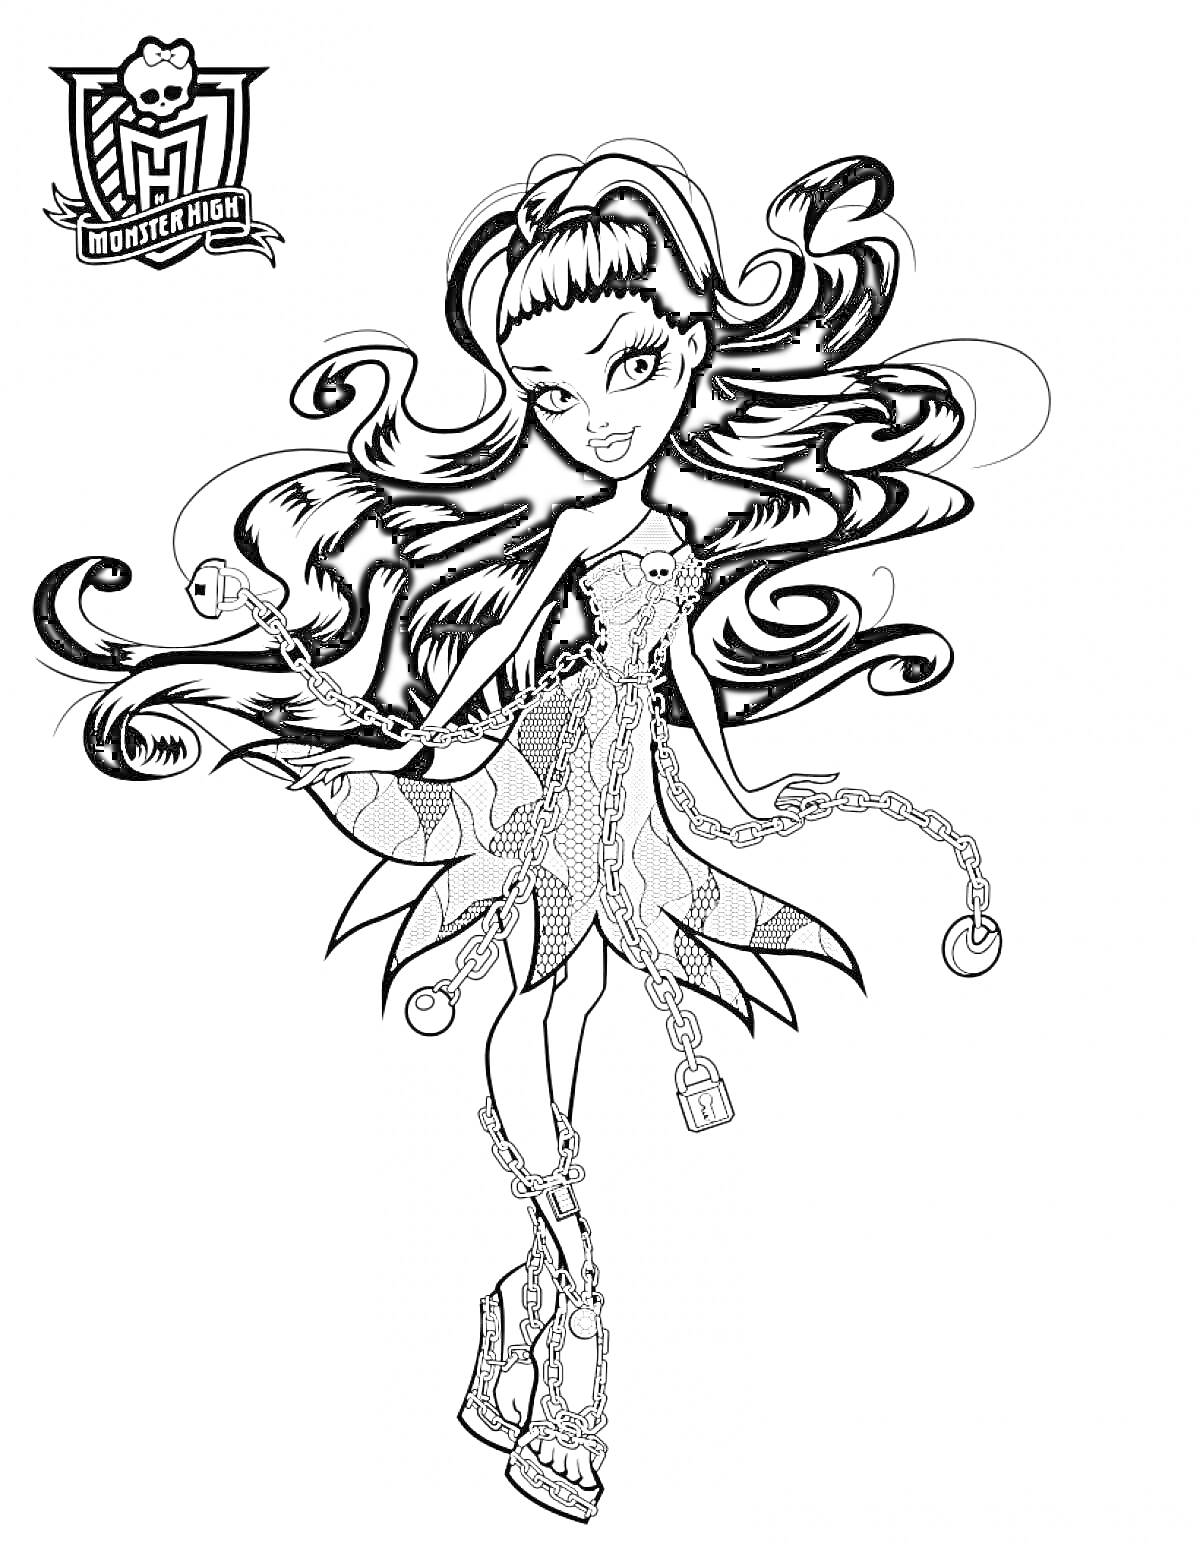 Раскраска Монстер Хай Призрачно, девушка с длинными волосами, цепи и замки на платье, высокие каблуки с шипами